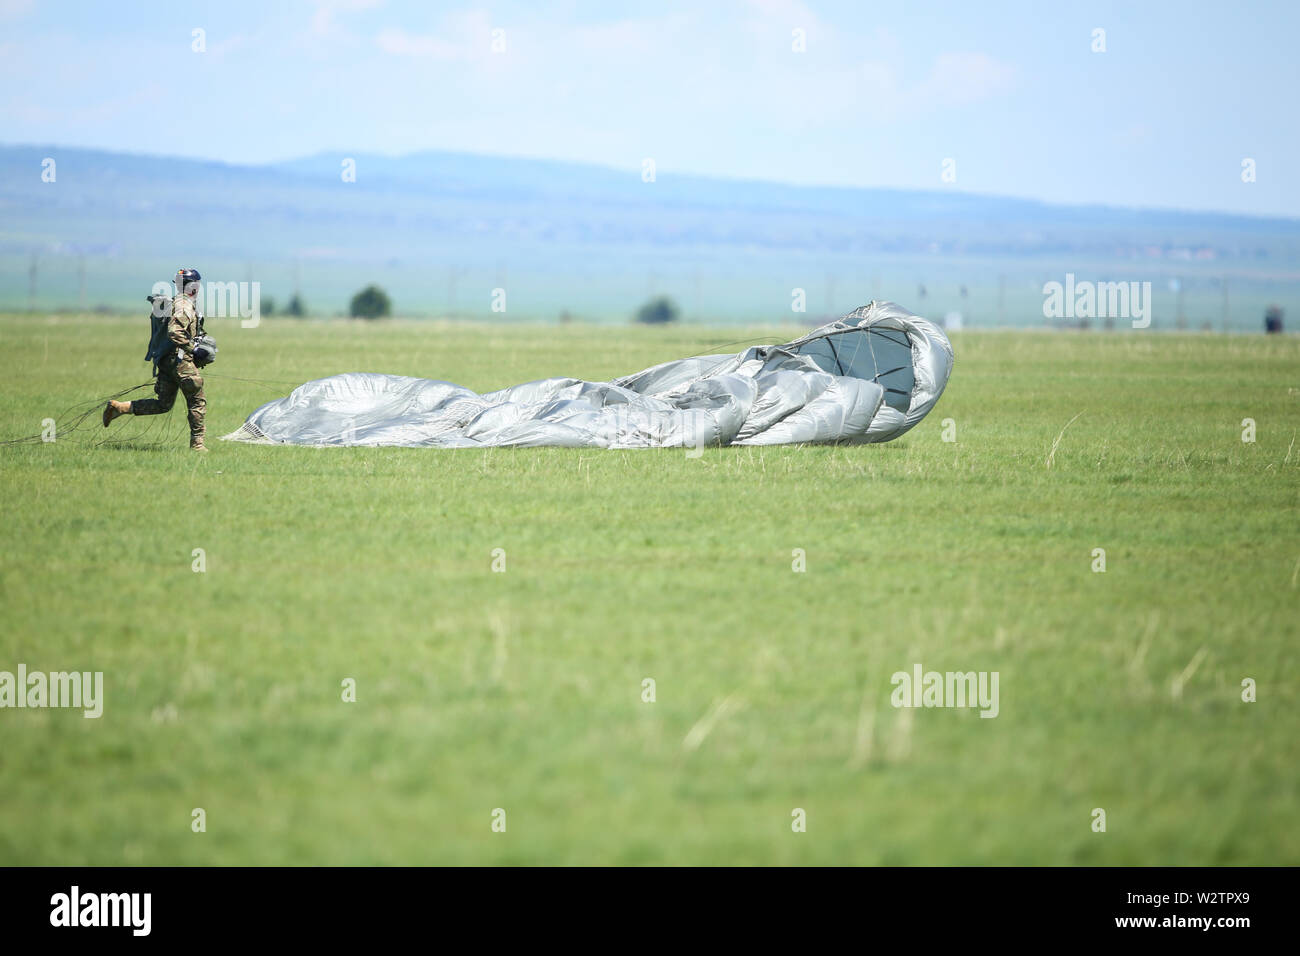 Boboc, Rumänien - 22. Mai 2019: Rumänische militärische Fallschirmjäger landen nach einem Sprung von einer Armee Flugzeug, während einer Räumungsübung. Stockfoto